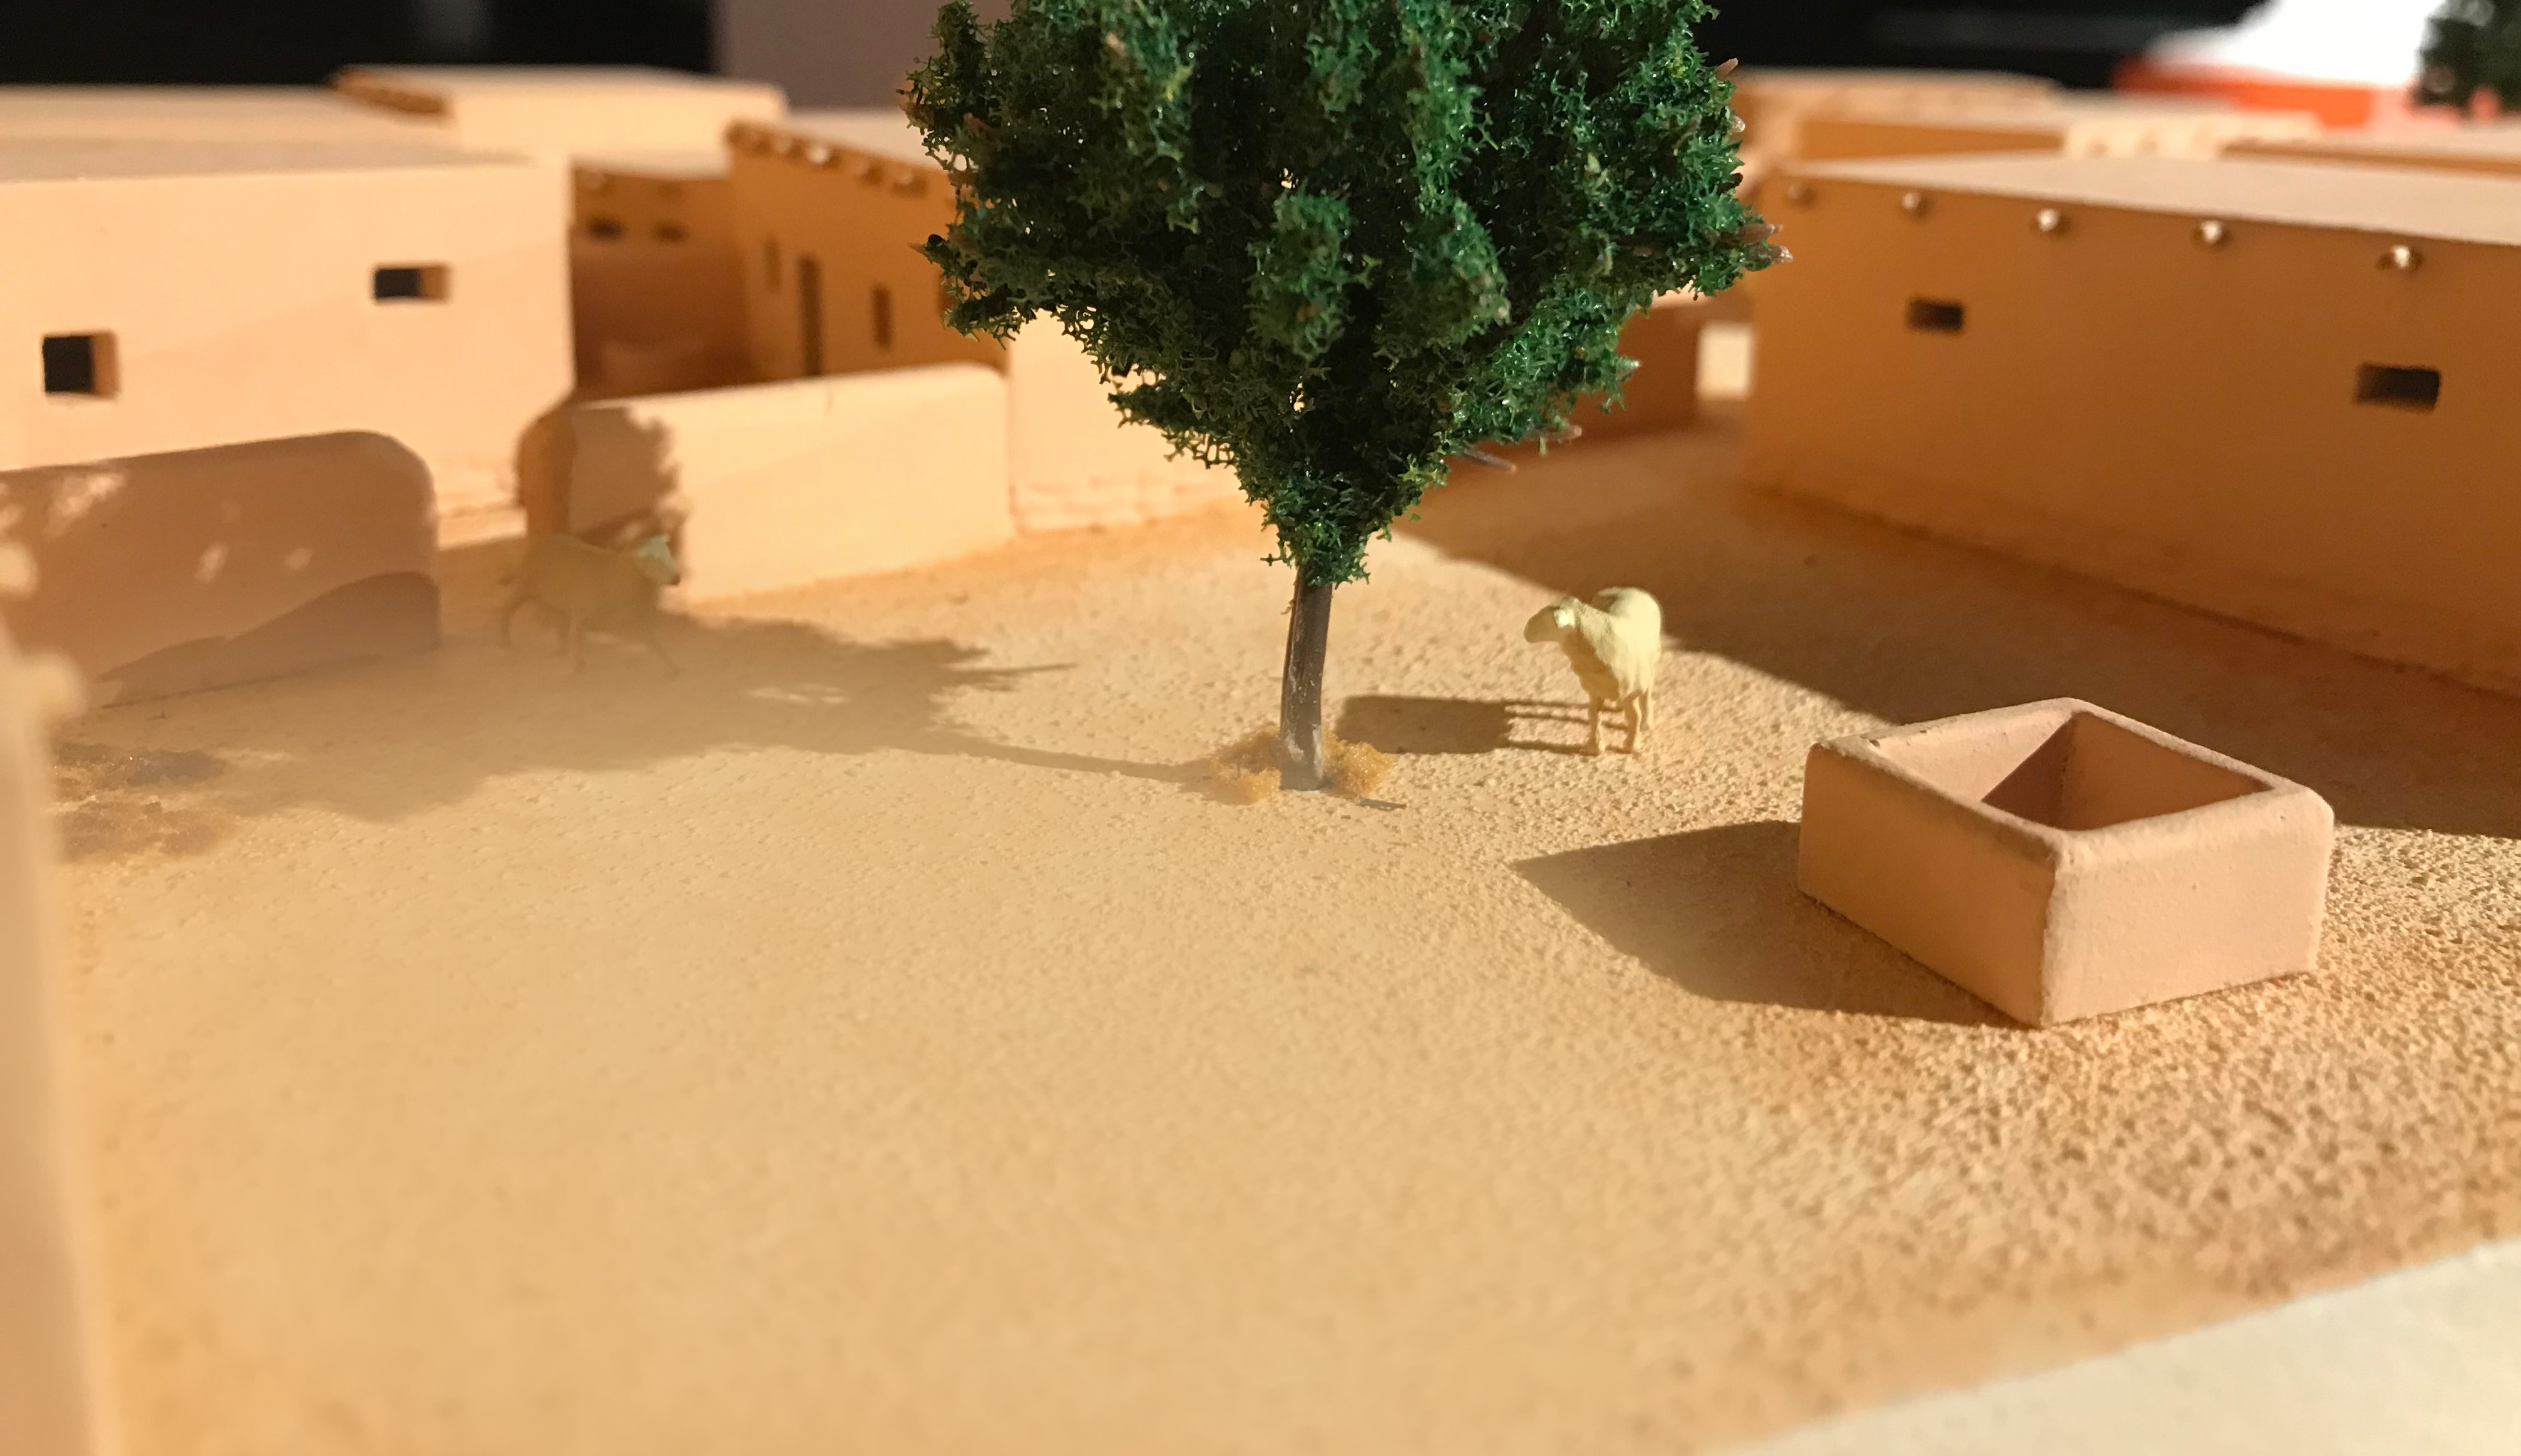 Detailansicht eines Siedlungsmodells mit Baum und rechteckigen Häusern